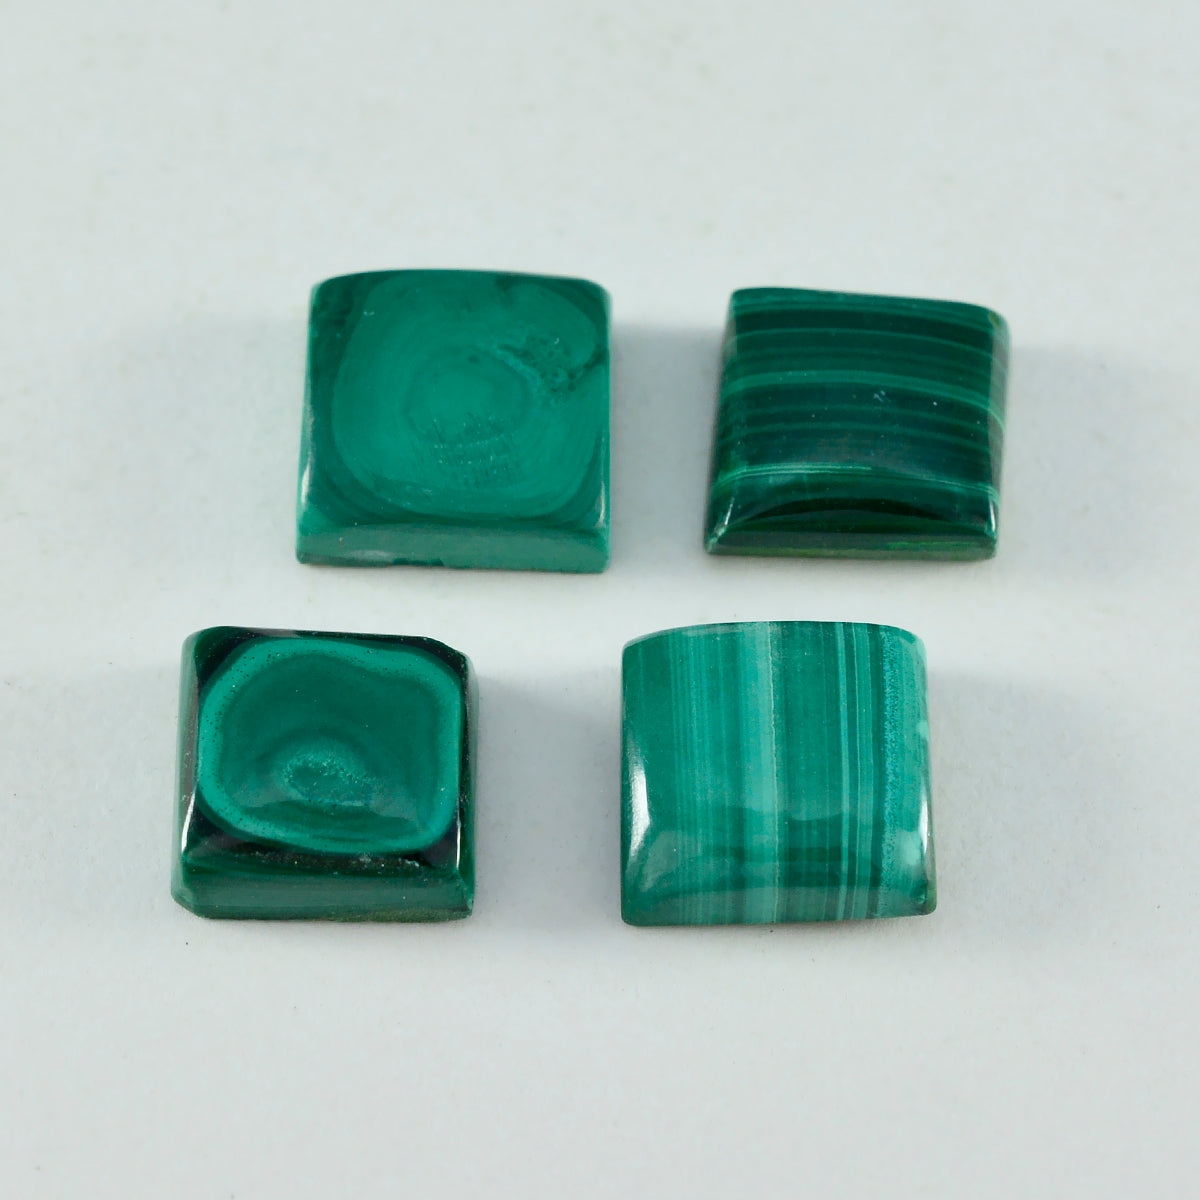 riyogems 1 cabujón de malaquita verde de 9x9 mm, forma cuadrada, una piedra preciosa de calidad